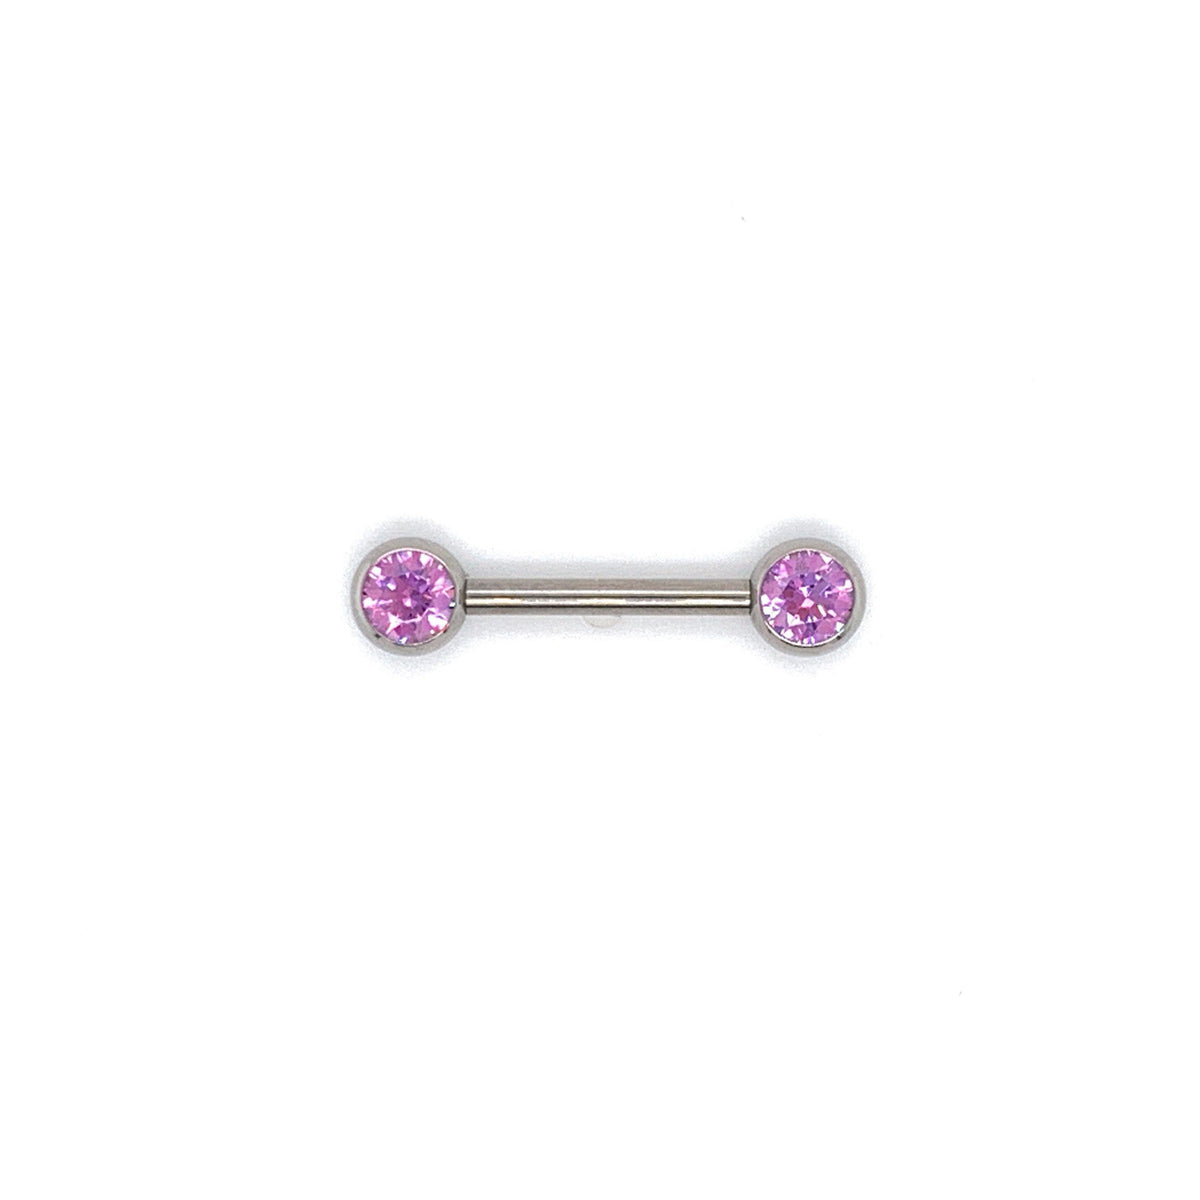 NeoMetal Nipple Bar with Fancy Purple CZ Gems THREADLESS - Isha Body Jewellery